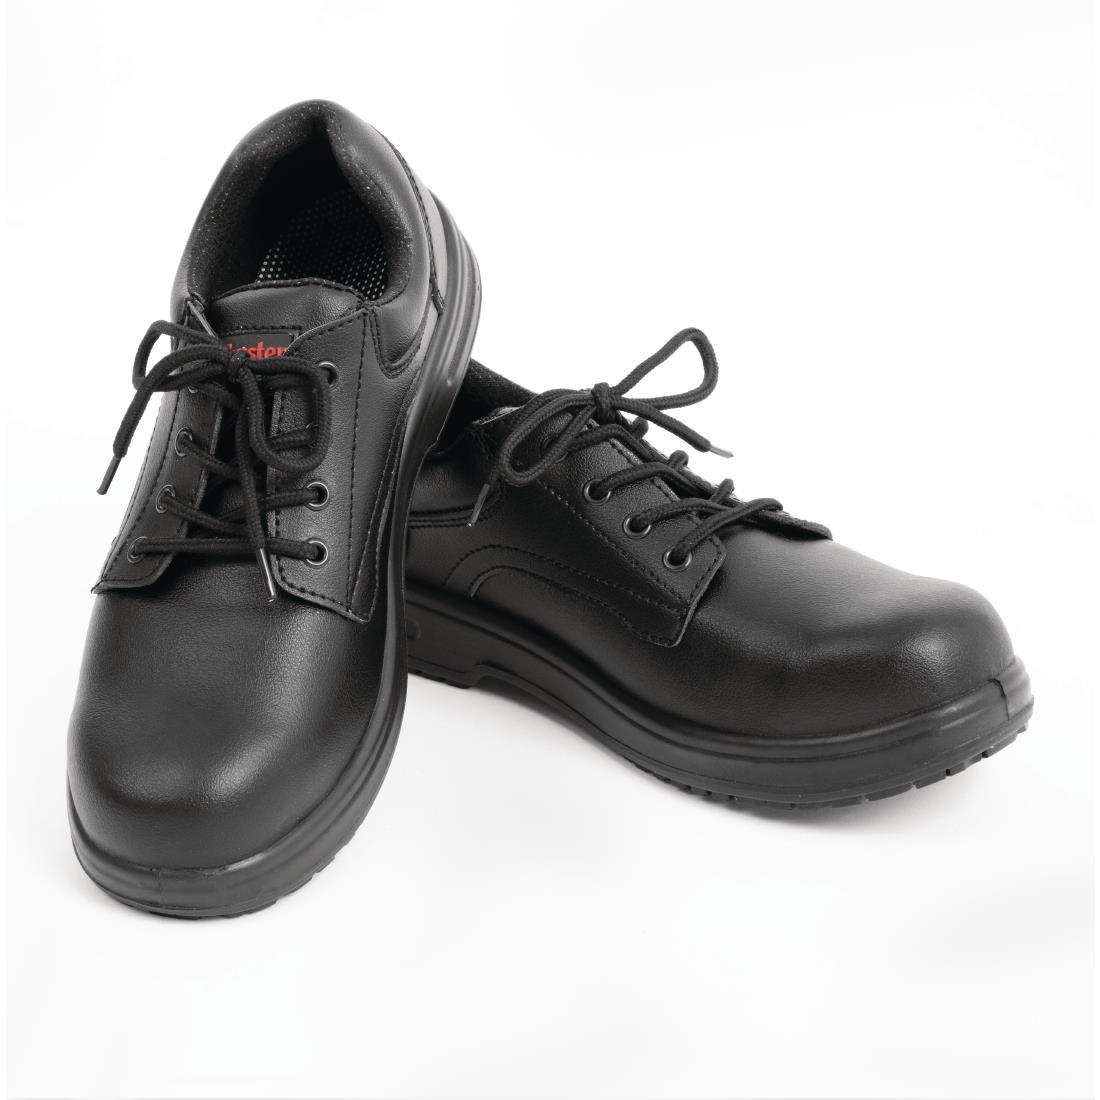 Slipbuster Basic Toe Cap Safety Shoes Black 45 - BB497-45  - 4